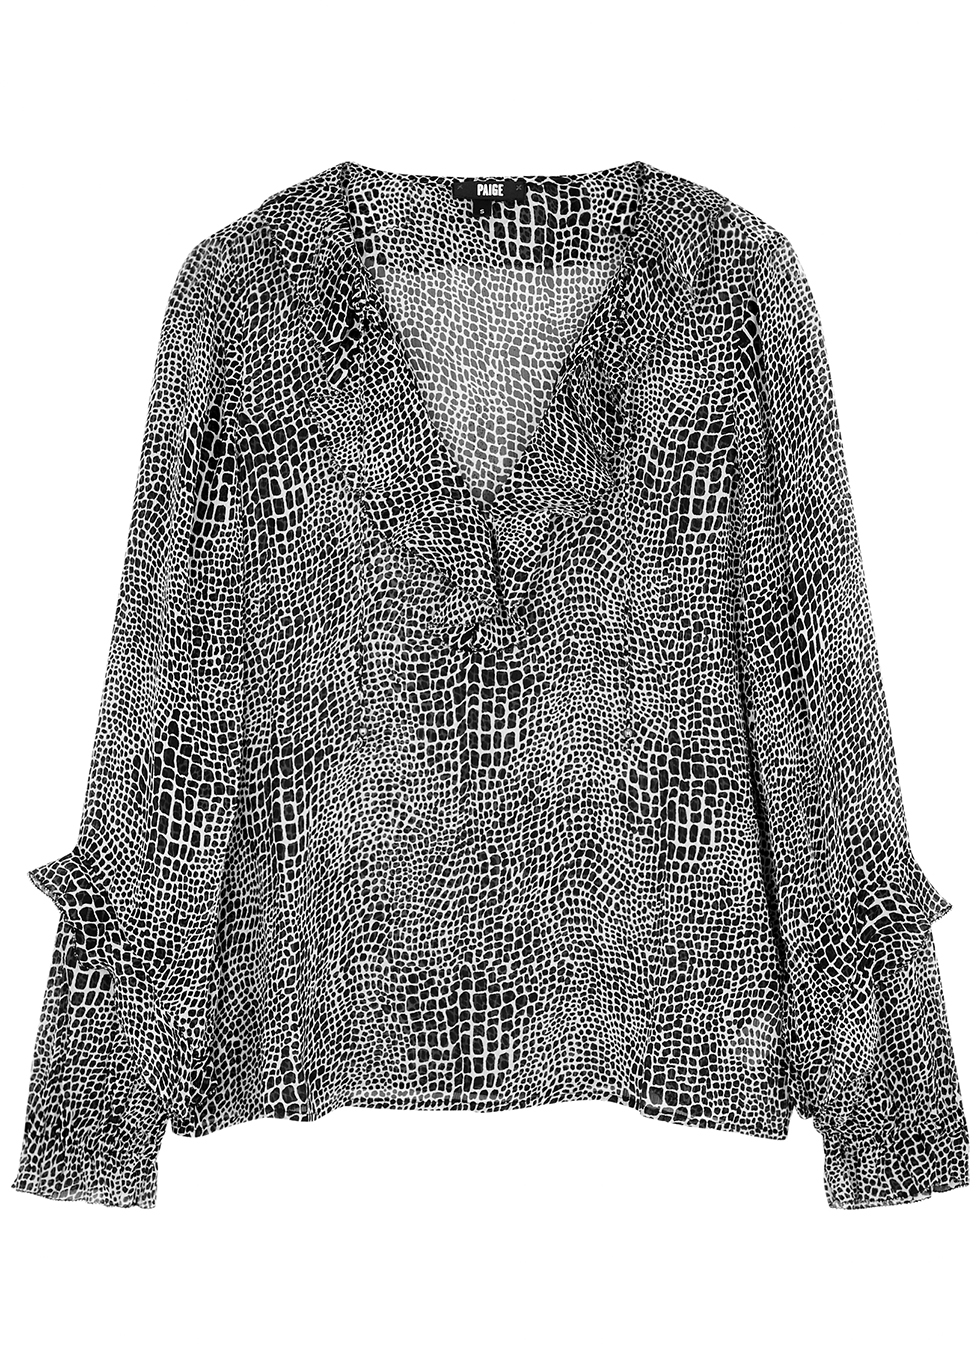 Robin crocodile-print silk-chiffon blouse